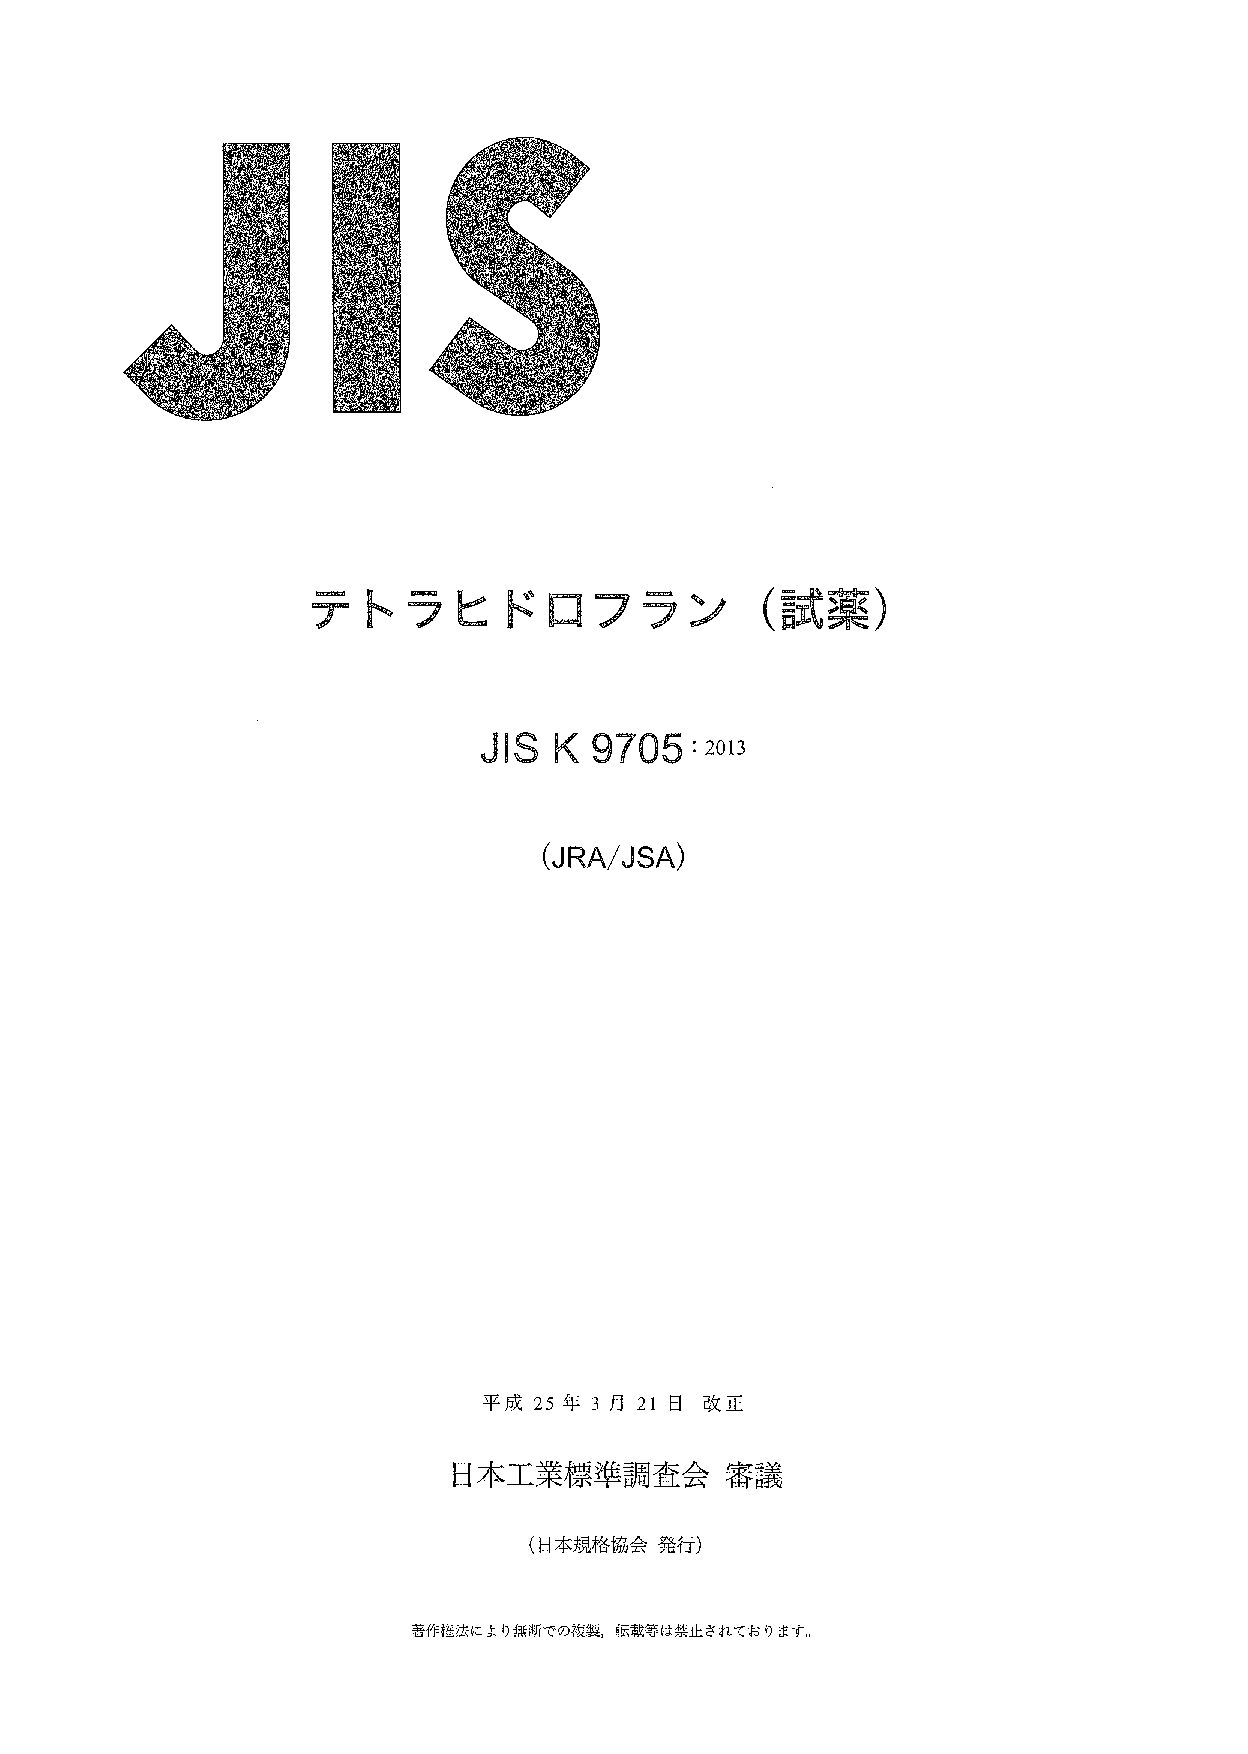 JIS K 9705:2013